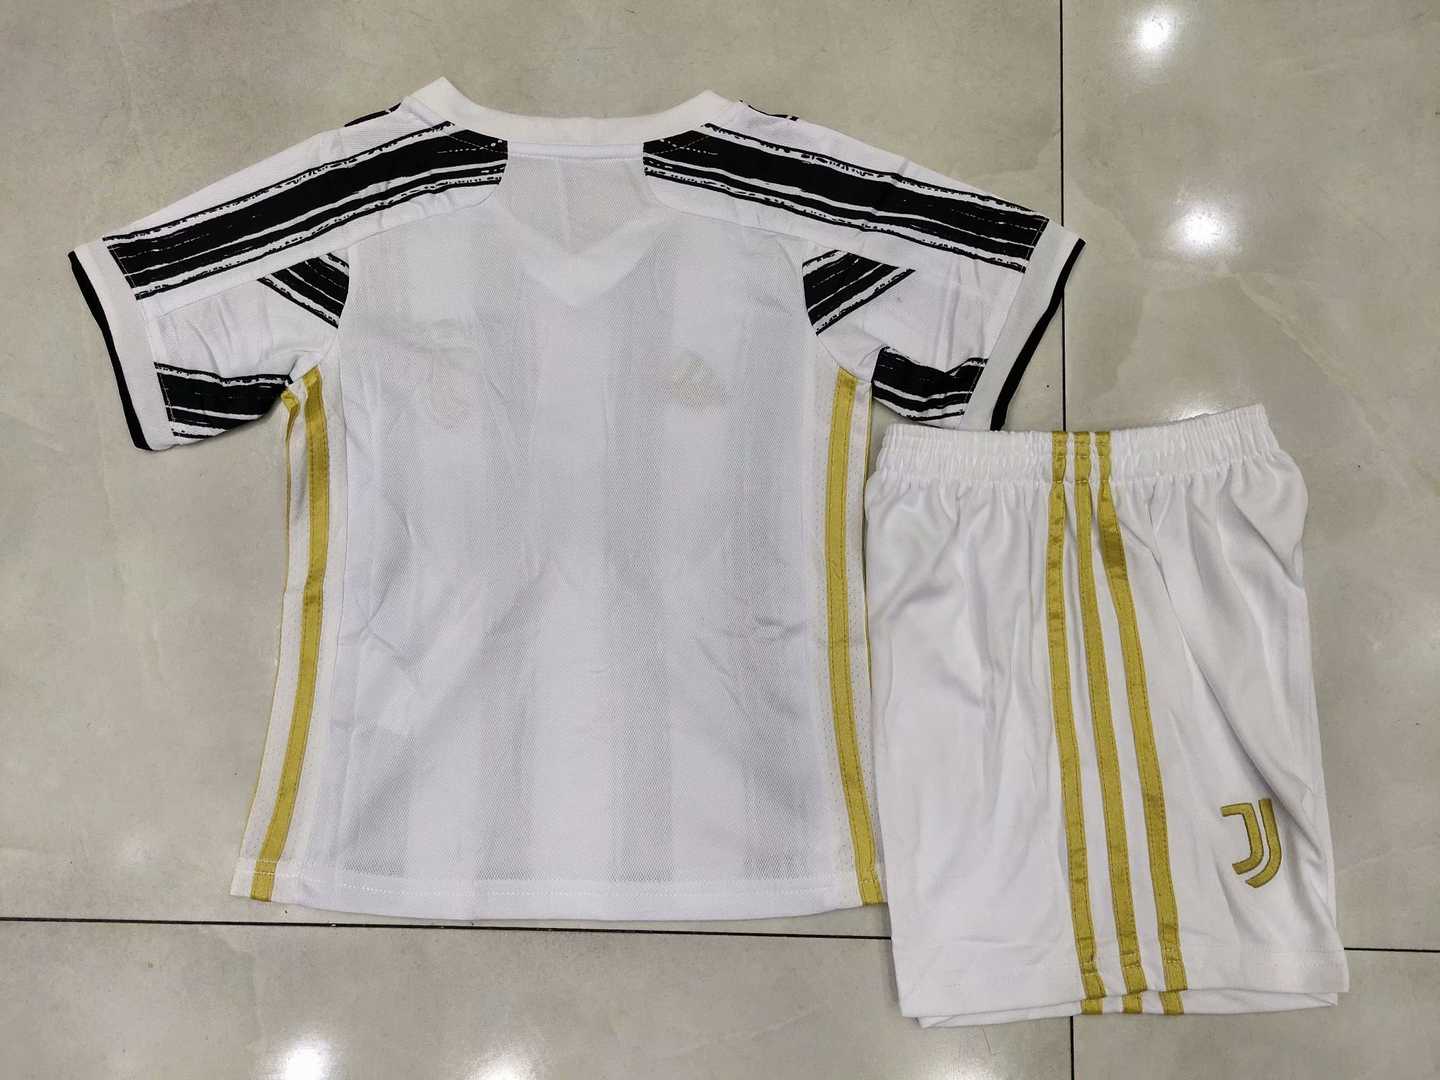 2020/21 Juventus Home Kids Soccer Kit (Jersey + Shorts)